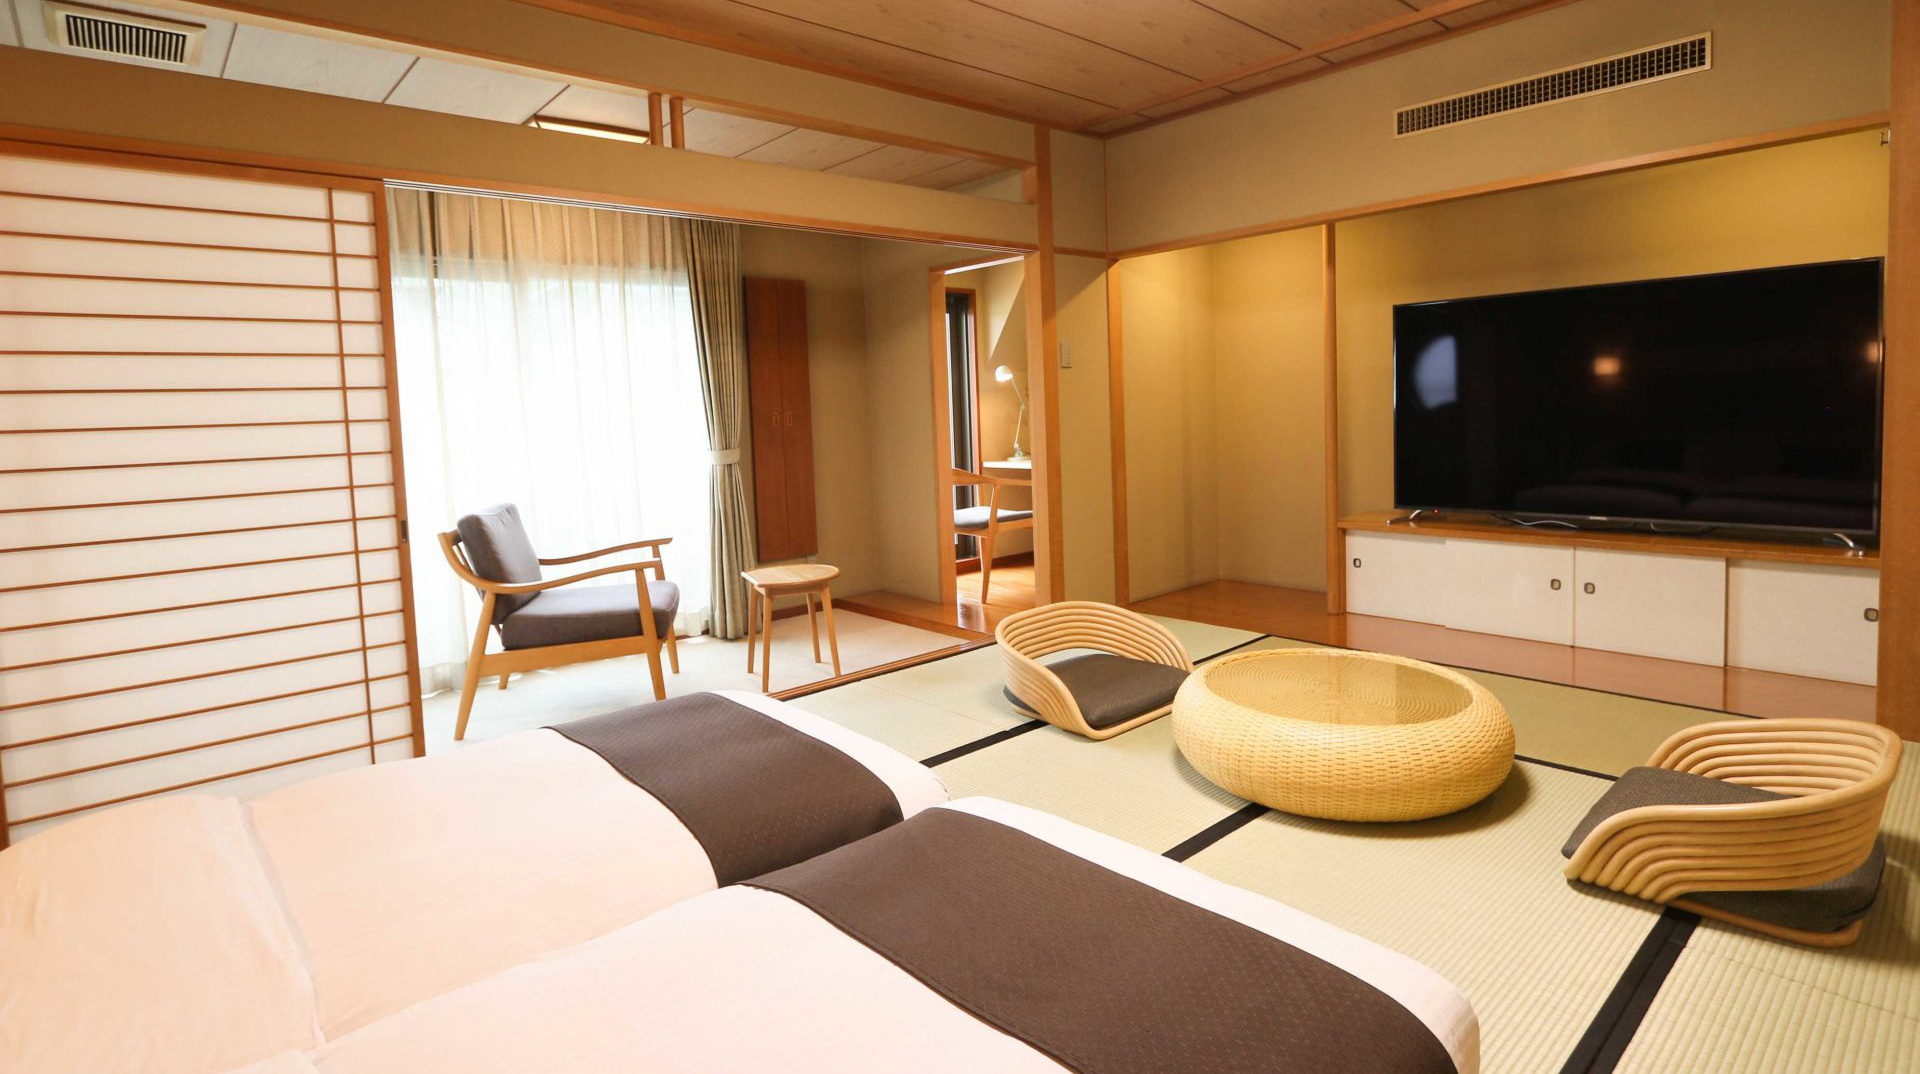 【和モダンツイン】畳敷きの純和風なお部屋にゆとりのある大きさのツインベッドを配置しております